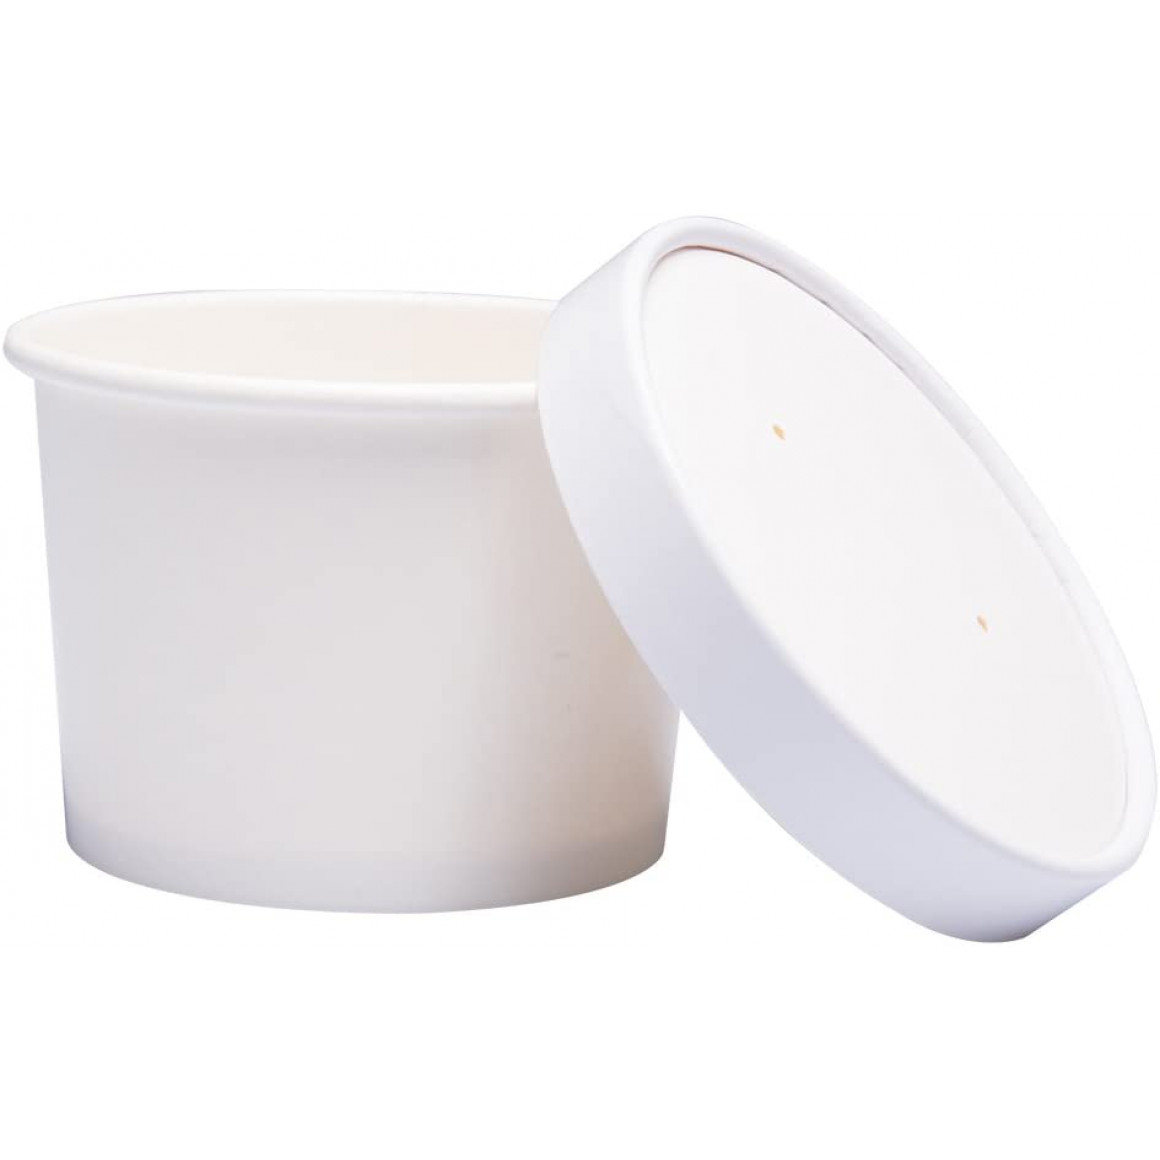 White soup cup paper lids 260g